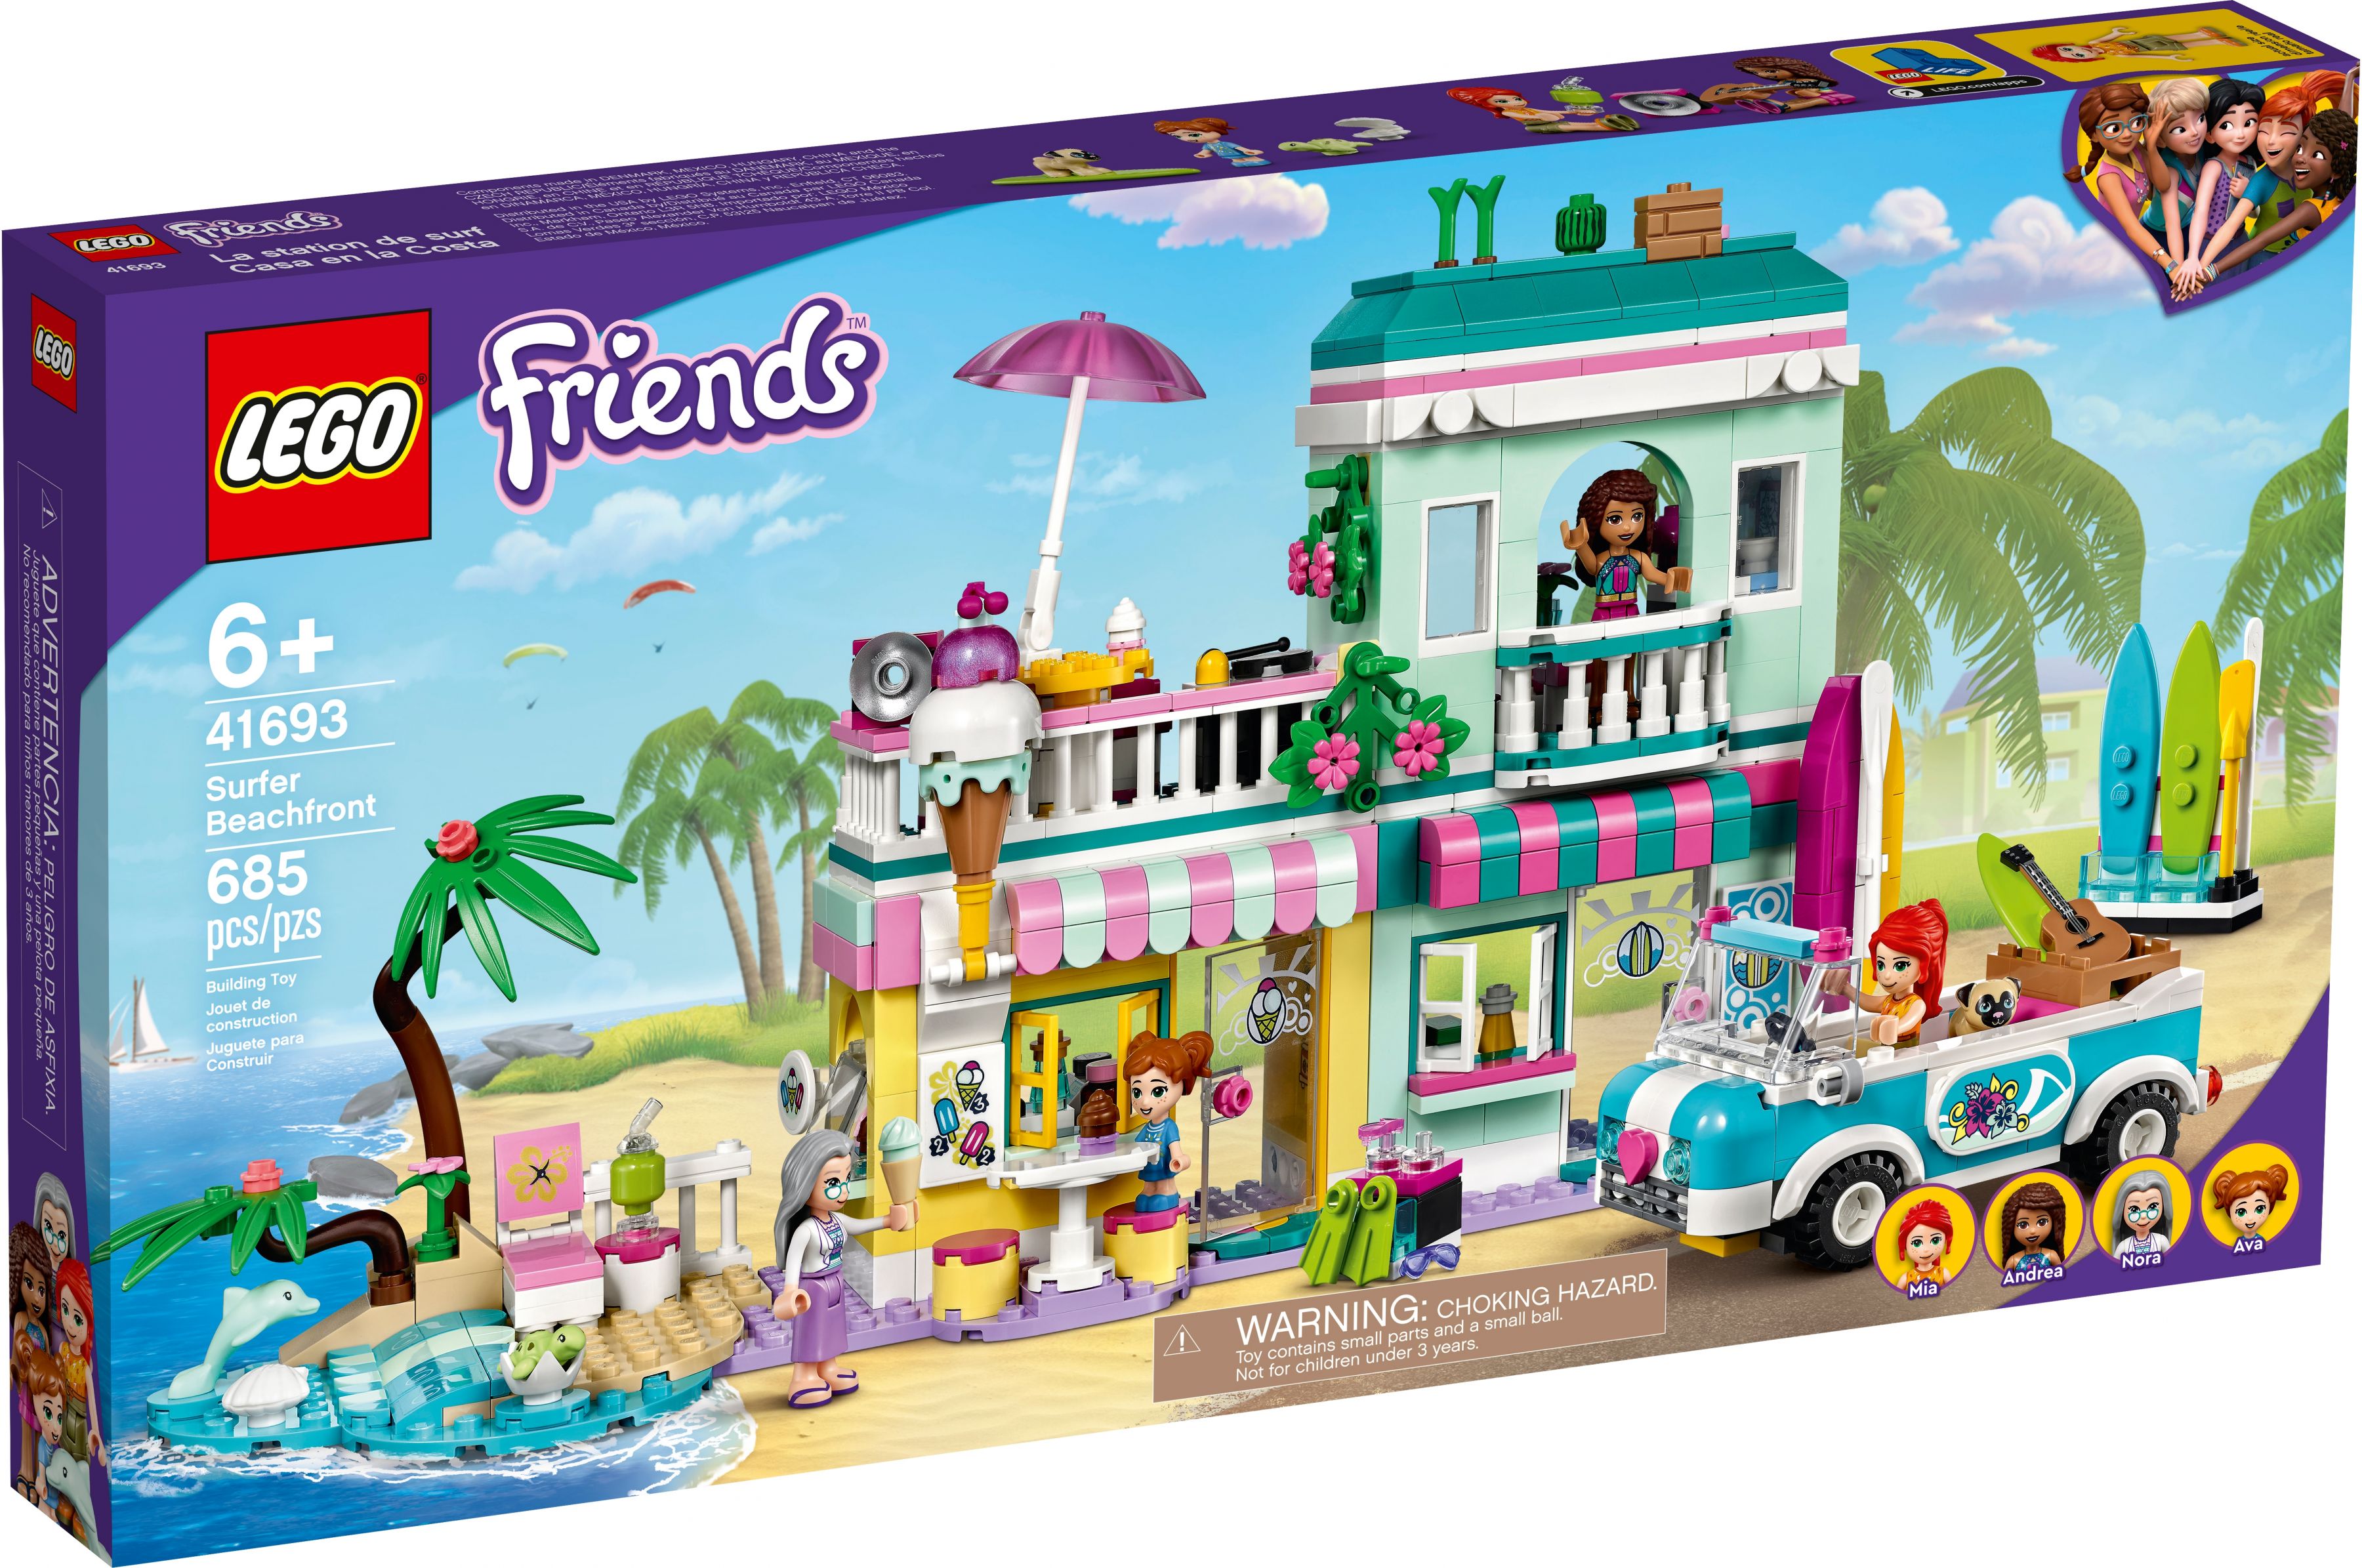 LEGO Friends 41693 Surfer-Strandhaus LEGO_41693_box1_v39.jpg